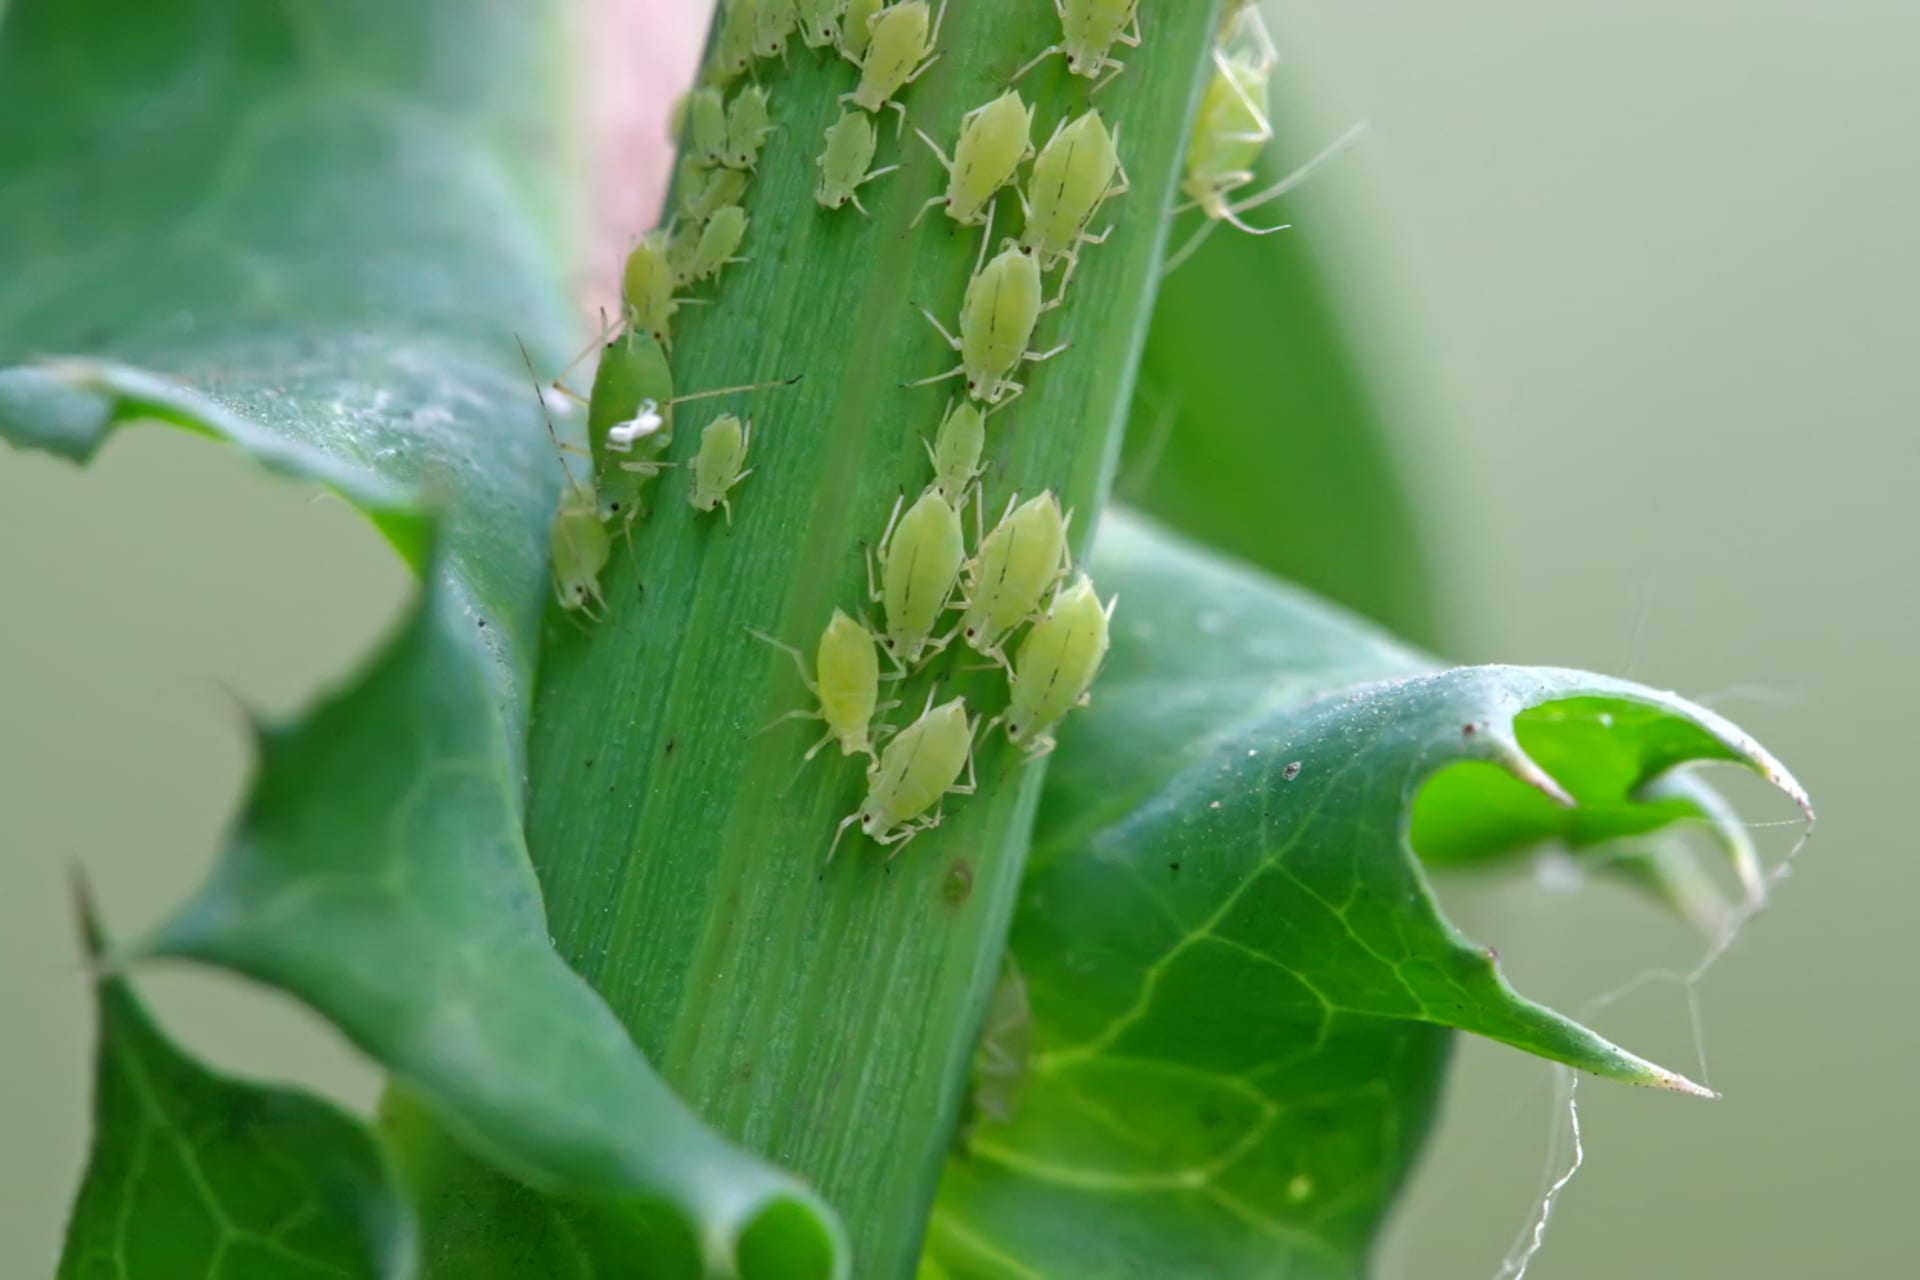 Mšice jsou malinkatý hmyz o velikosti několika milimetrů, který se na napadených rostlinách množí ohromnou rychlostí. Za jeden rok vytvoří až desítky generací